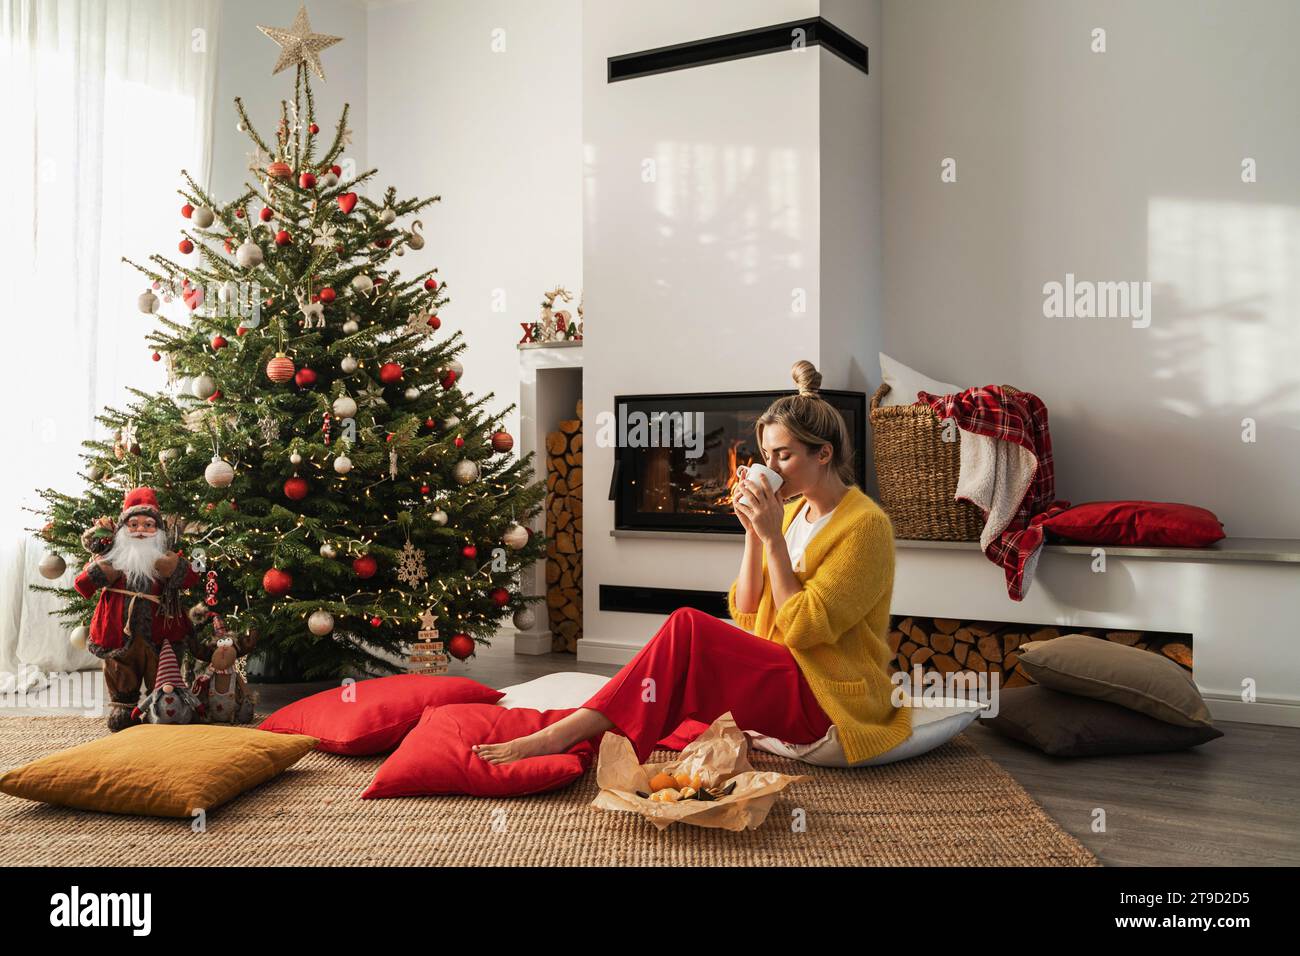 Happy Woman sitzt neben einem glühenden Kamin in einem gemütlichen Wohnzimmer, geschmückt mit einem Weihnachtsbaum und festlichen Dekorationen, und genießt eine Tasse heißes Getränk. Stockfoto